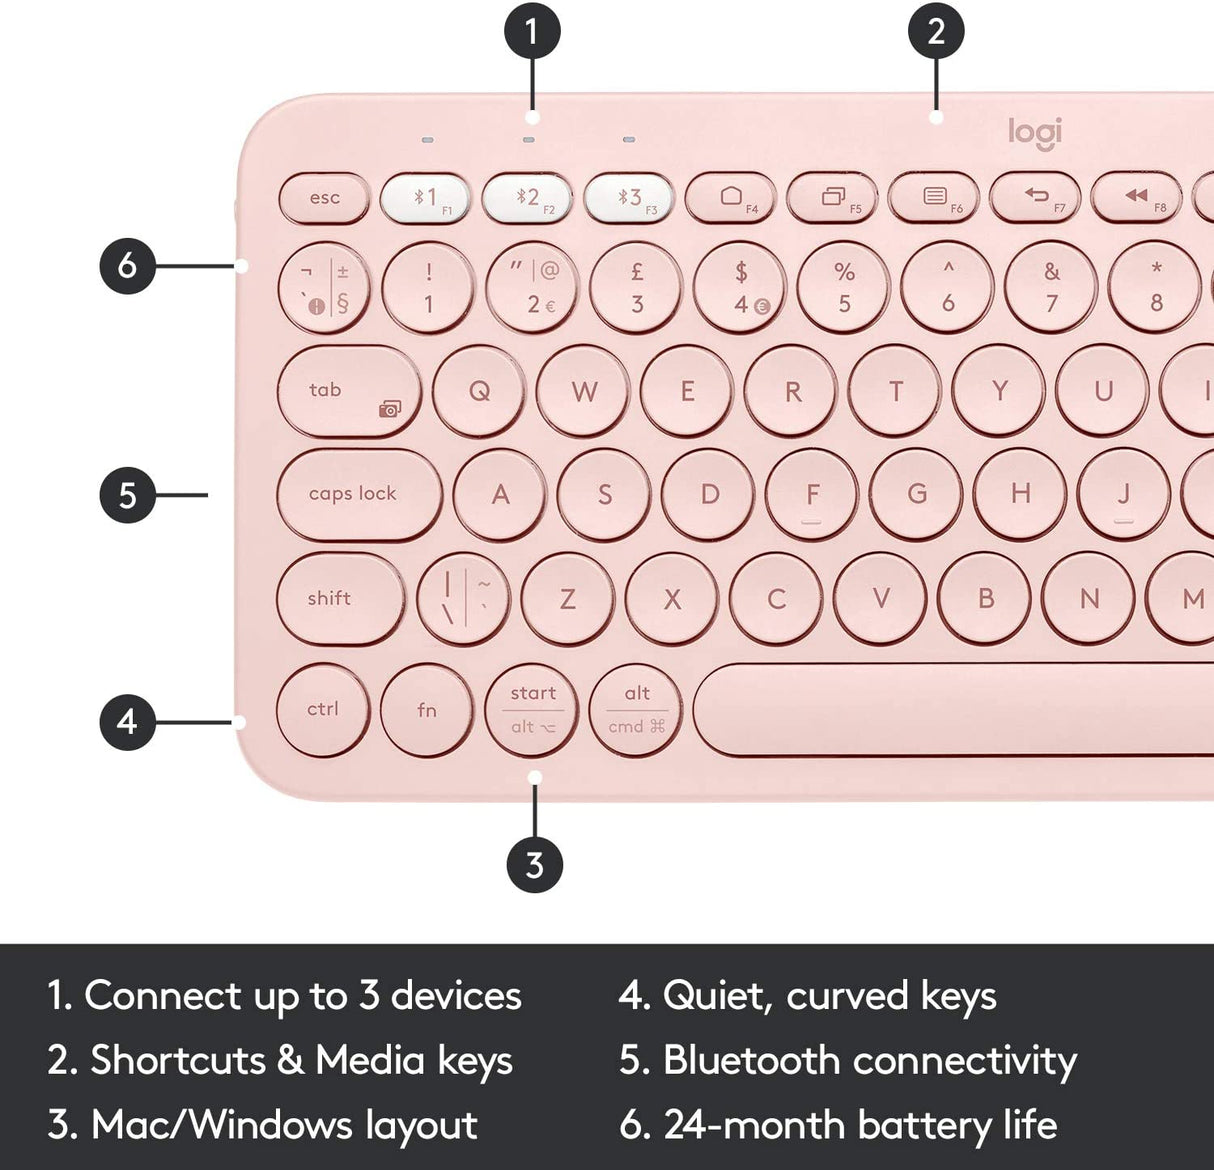 Logitech Keyboard K380 Multi-Device